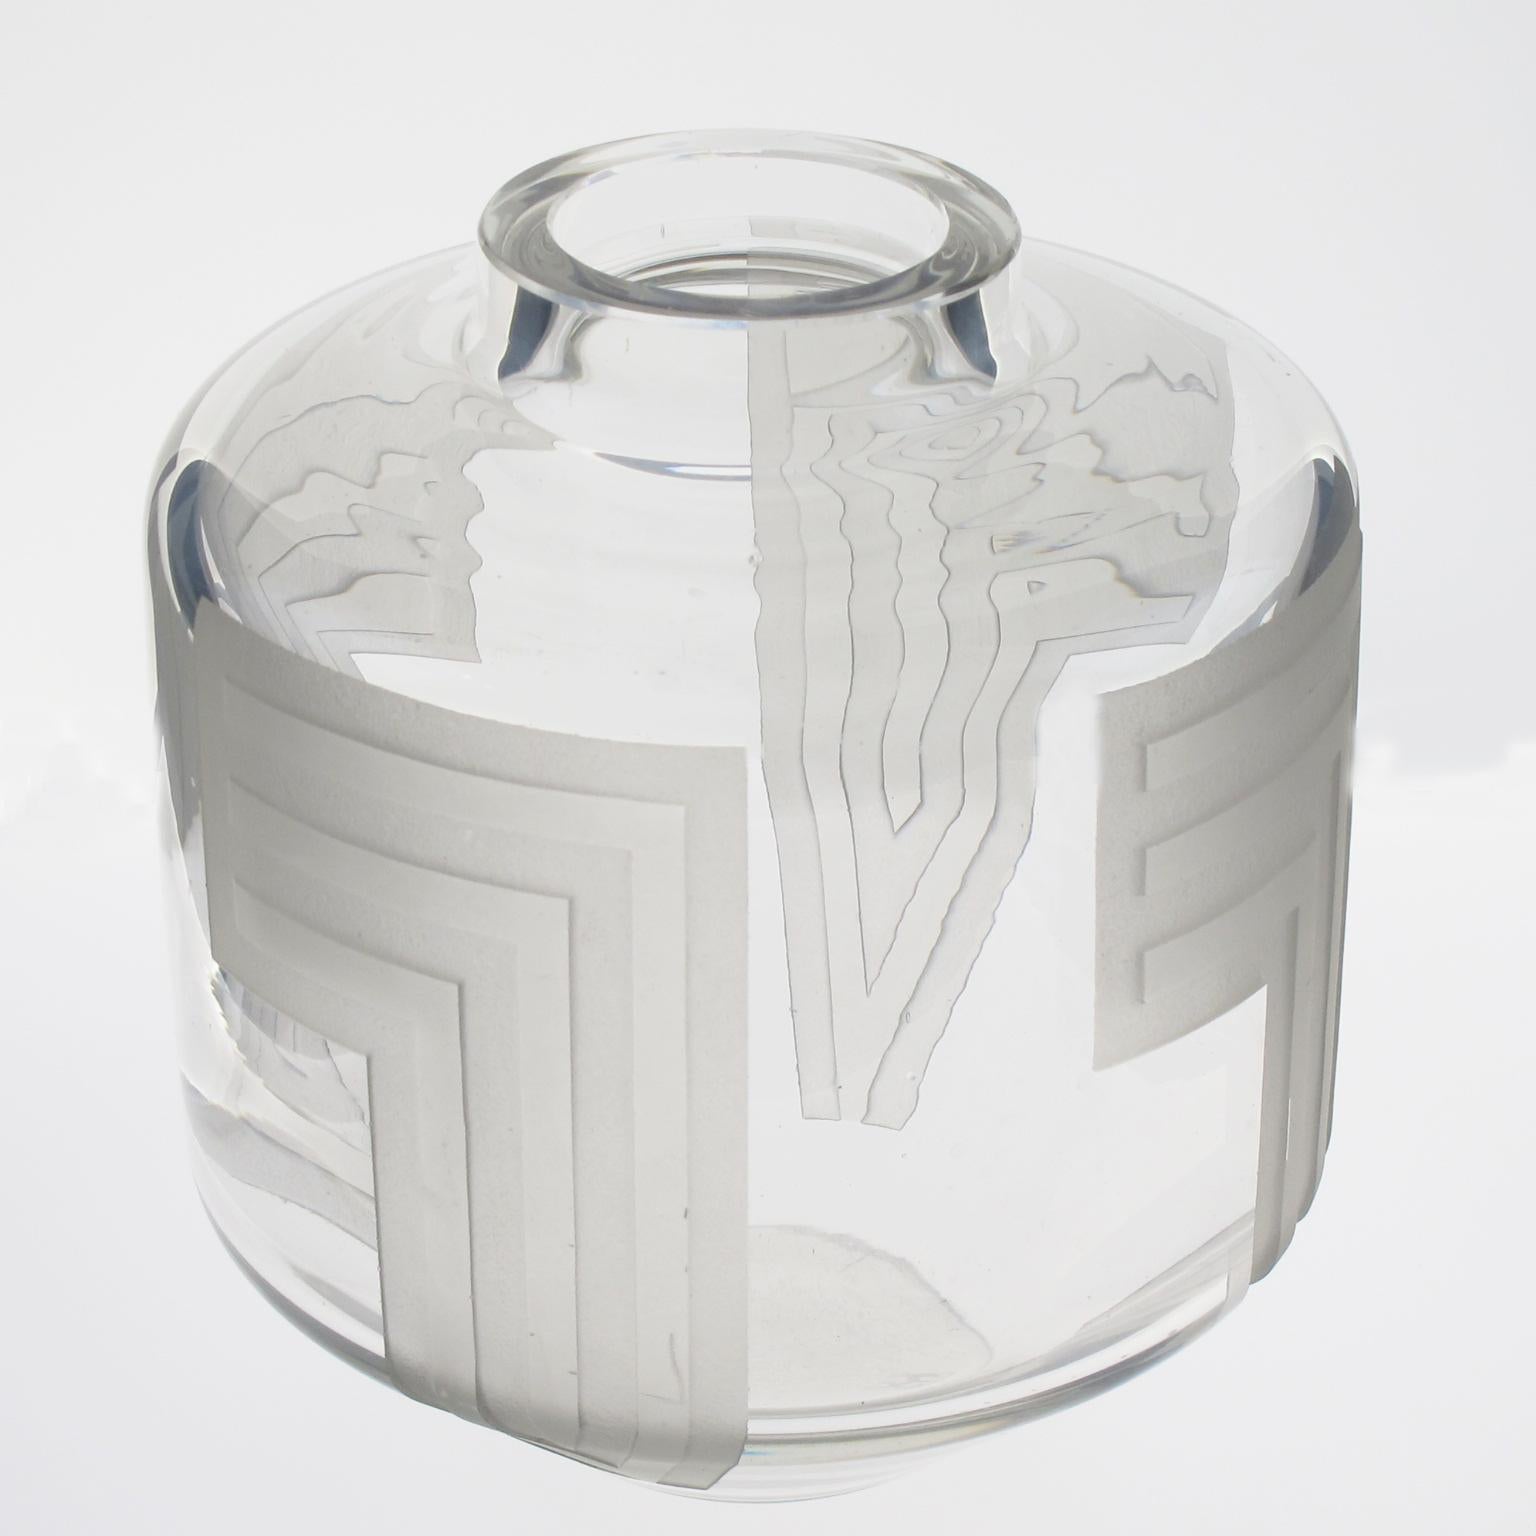 Le designer français Jean Luce (1895-1964) a créé cet impressionnant vase en verre gravé à l'acide dans les années 1930. Le motif géométrique avec des décorations répétées se trouve tout autour du vase. La signature de l'artiste est en dessous avec